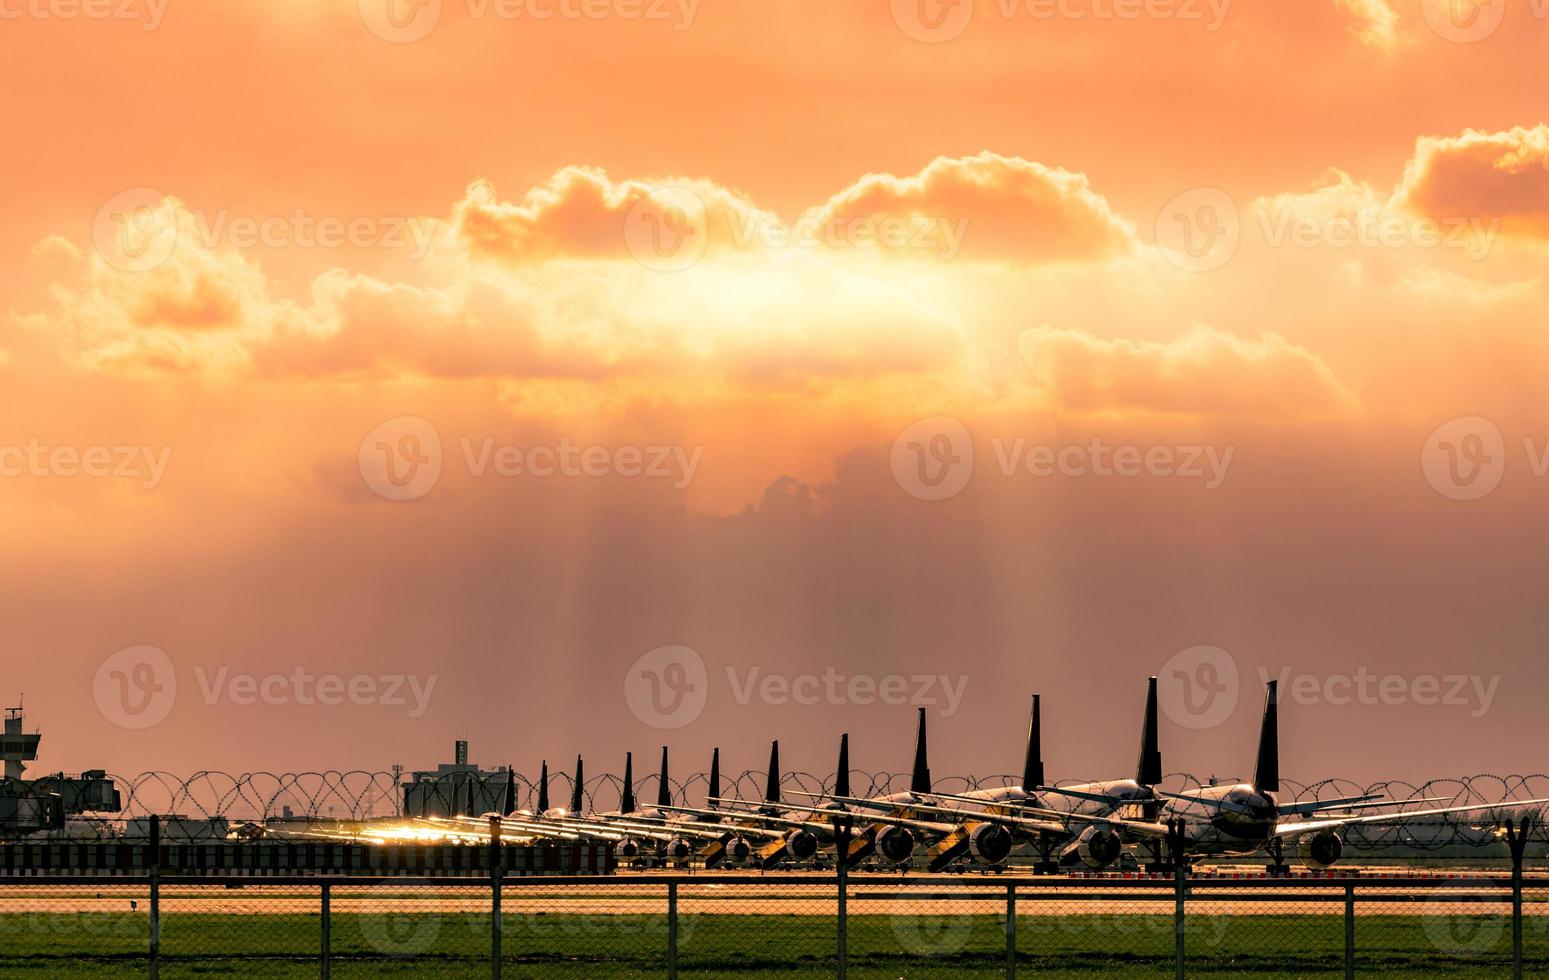 avion commercial stationné sur le parking de l'aéroport après l'impact de la crise du coronavirus sur les activités aéronautiques. l'avion est garé à l'intérieur de la clôture de l'aéroport avec un ciel coucher de soleil et un champ d'herbe verte. photo